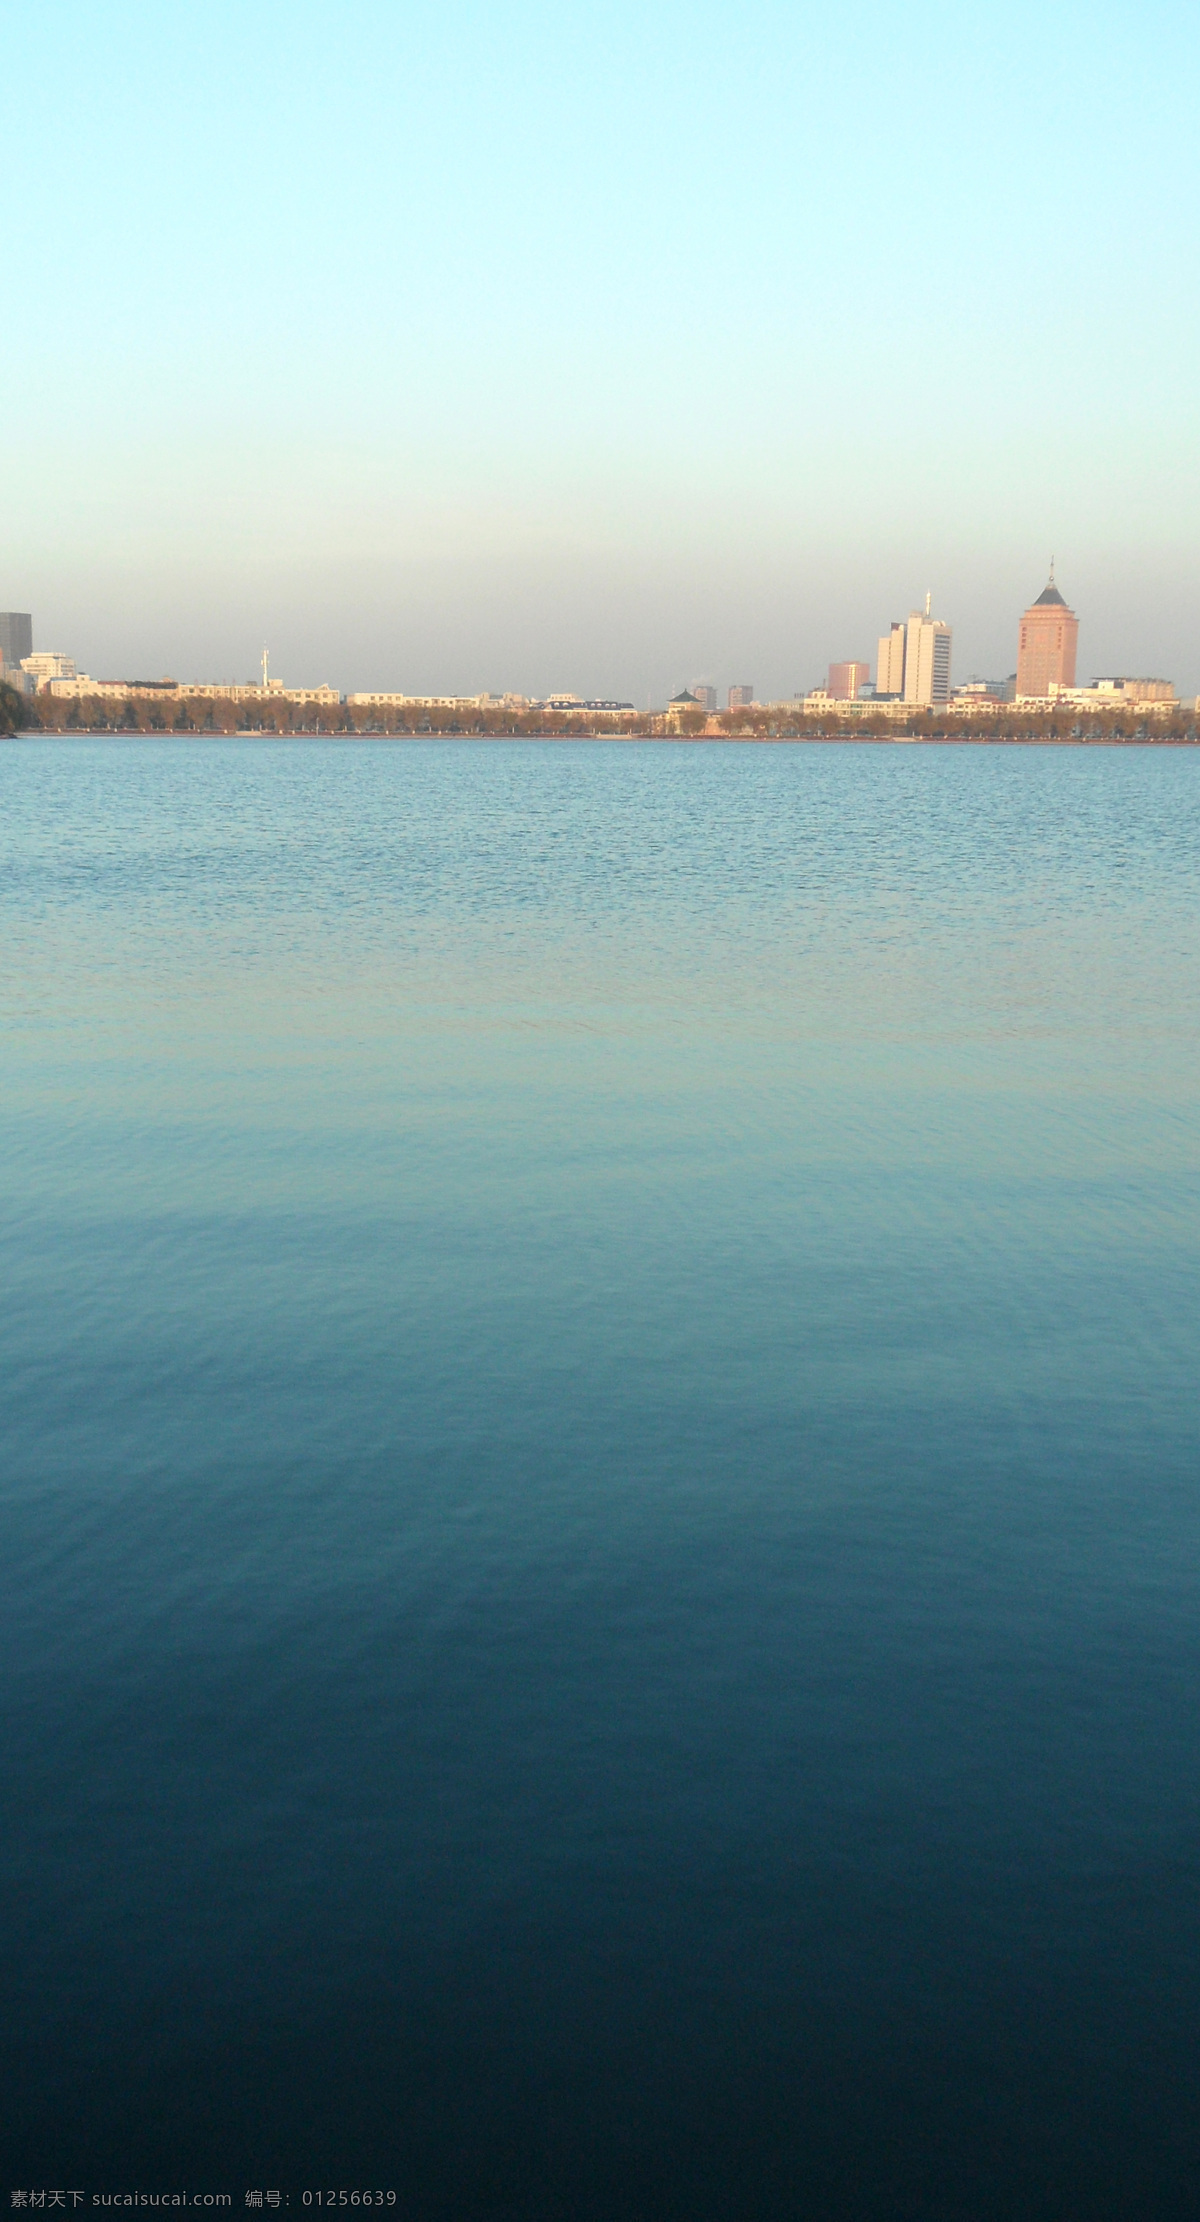 城市湖面 唯美 湖面 蓝色湖面 远景城市 山水风景 自然景观